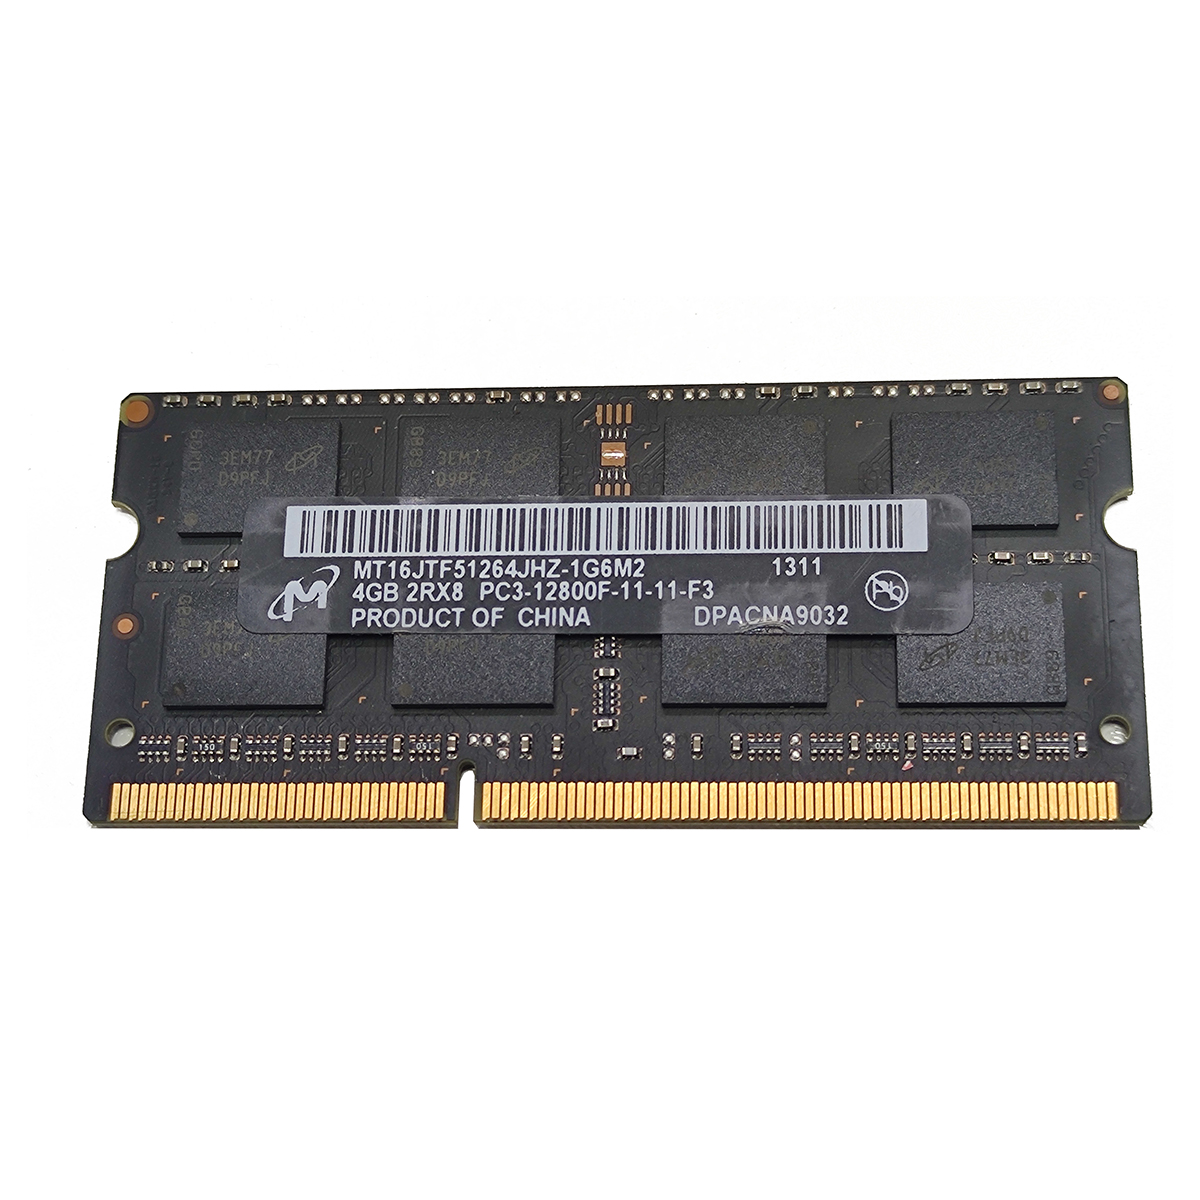 رم لپ تاپ DDR3 تک کاناله 12800 مگاهرتز CL11 میکرون مدل PC3 ظرفیت 4 گیگابایت